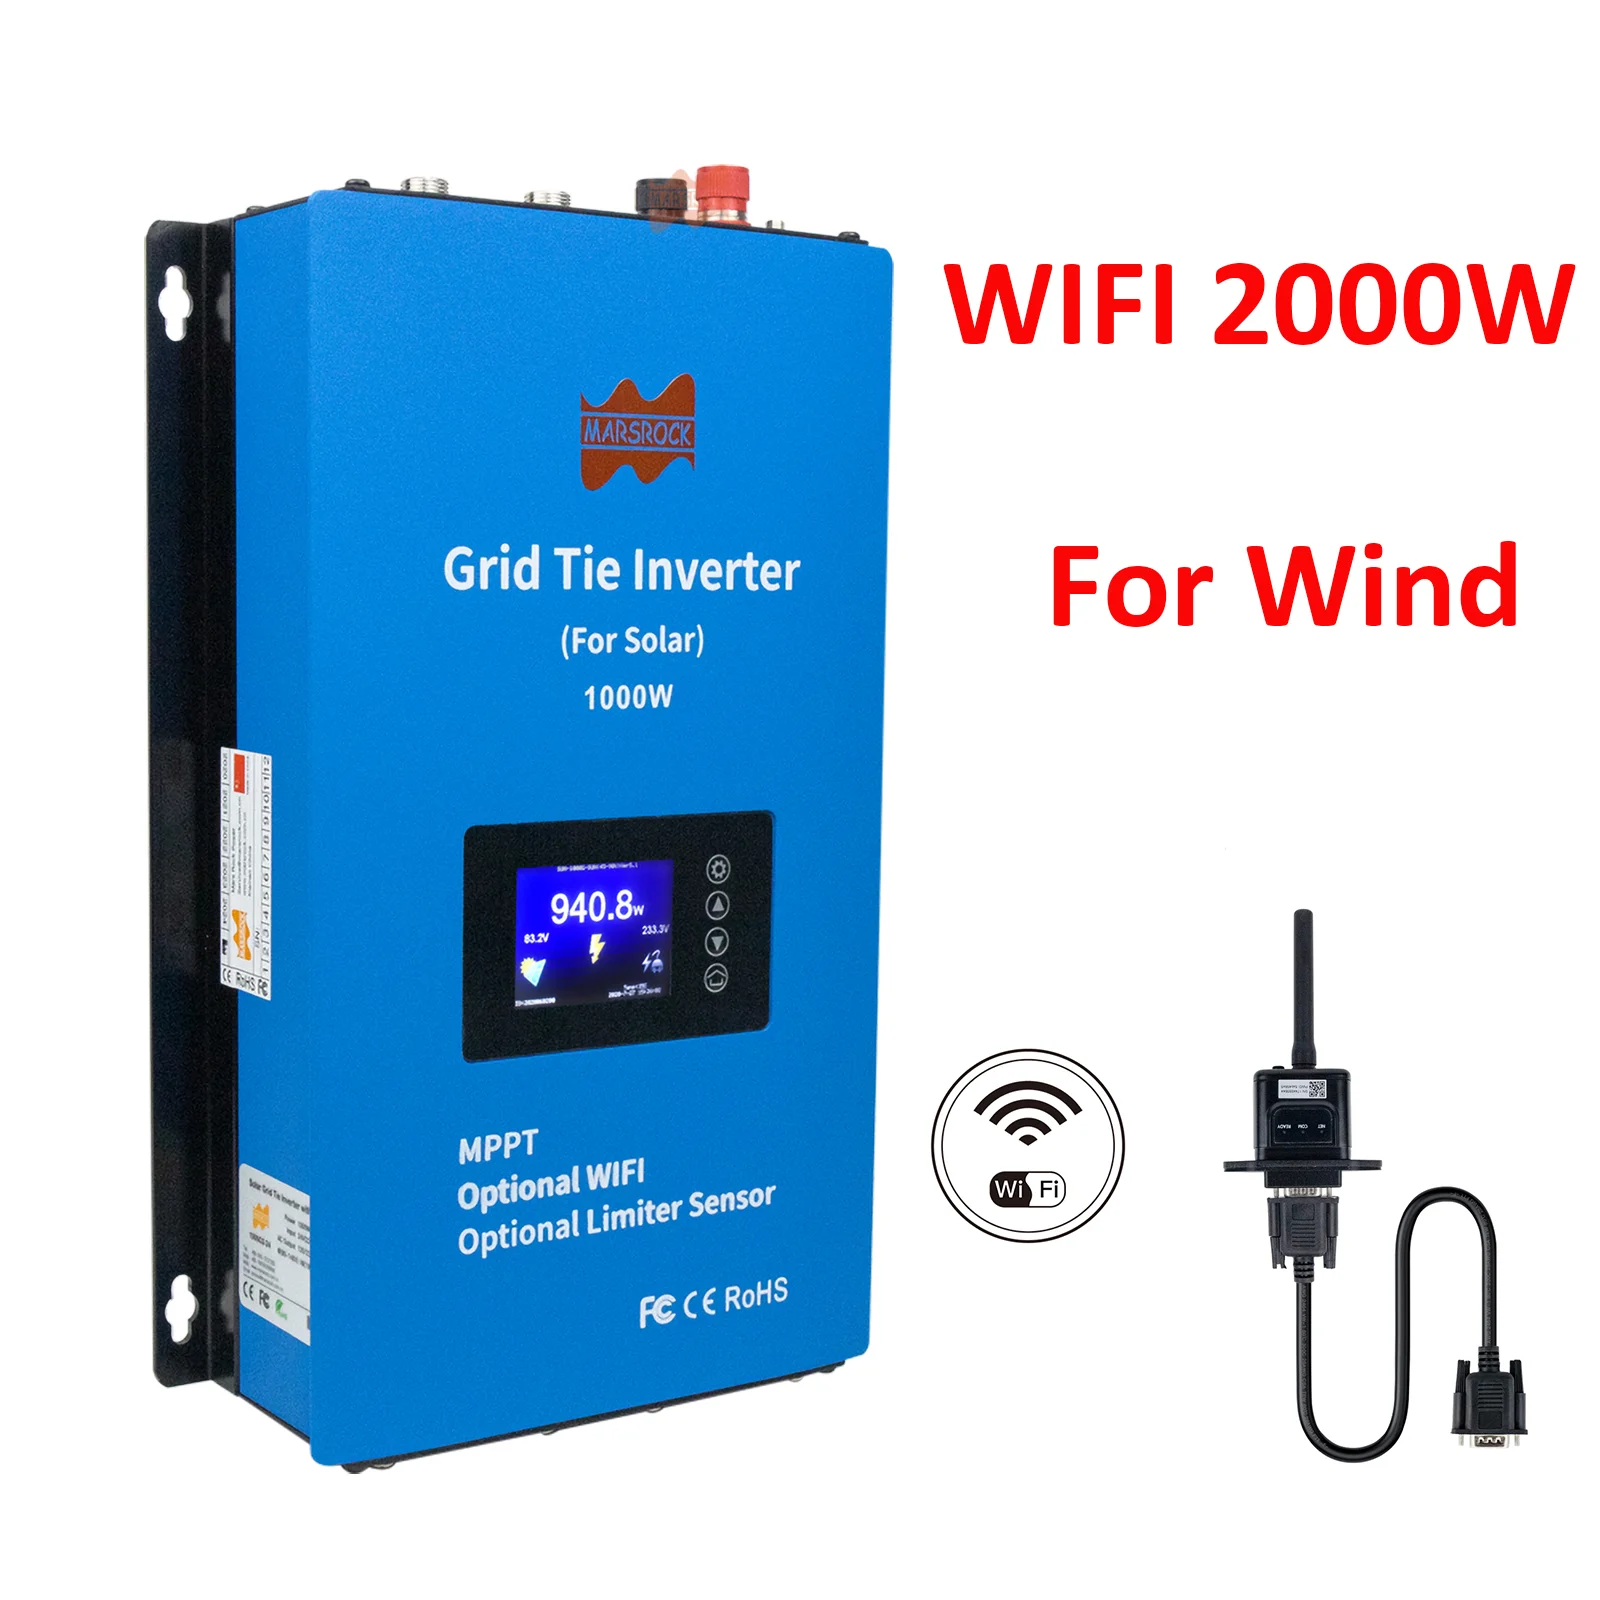 

2000W Inverter Wind Power Grid Tie MPPT Microinverter Limiter Current Sensor 24V/48V AC Pure Sine Wave Converter Optional WIFI